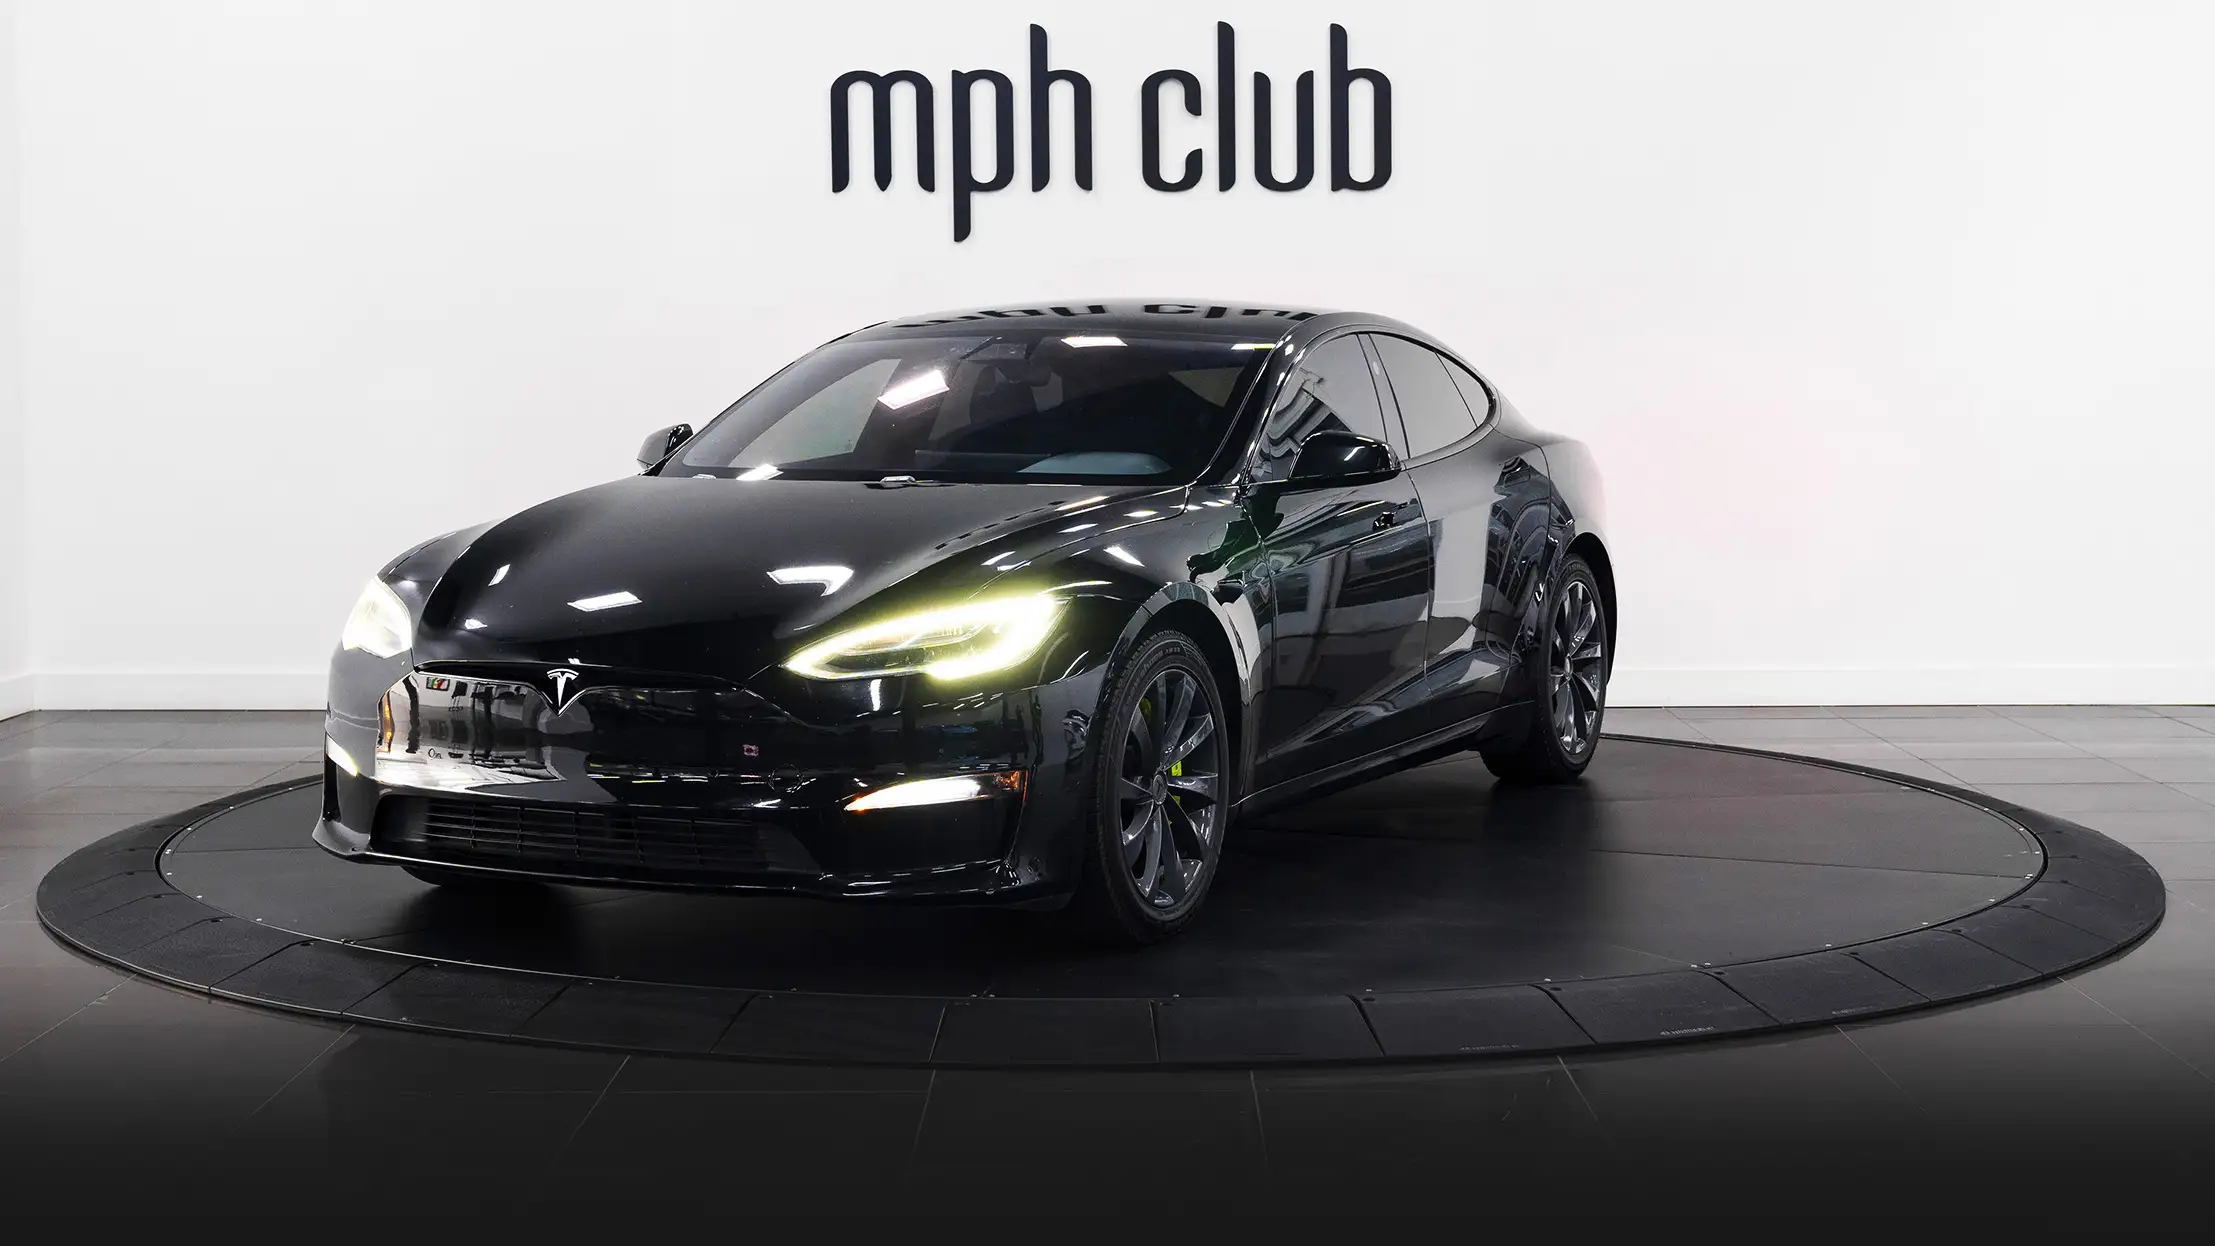 Black Tesla Model S Plaid rental profile view mph club